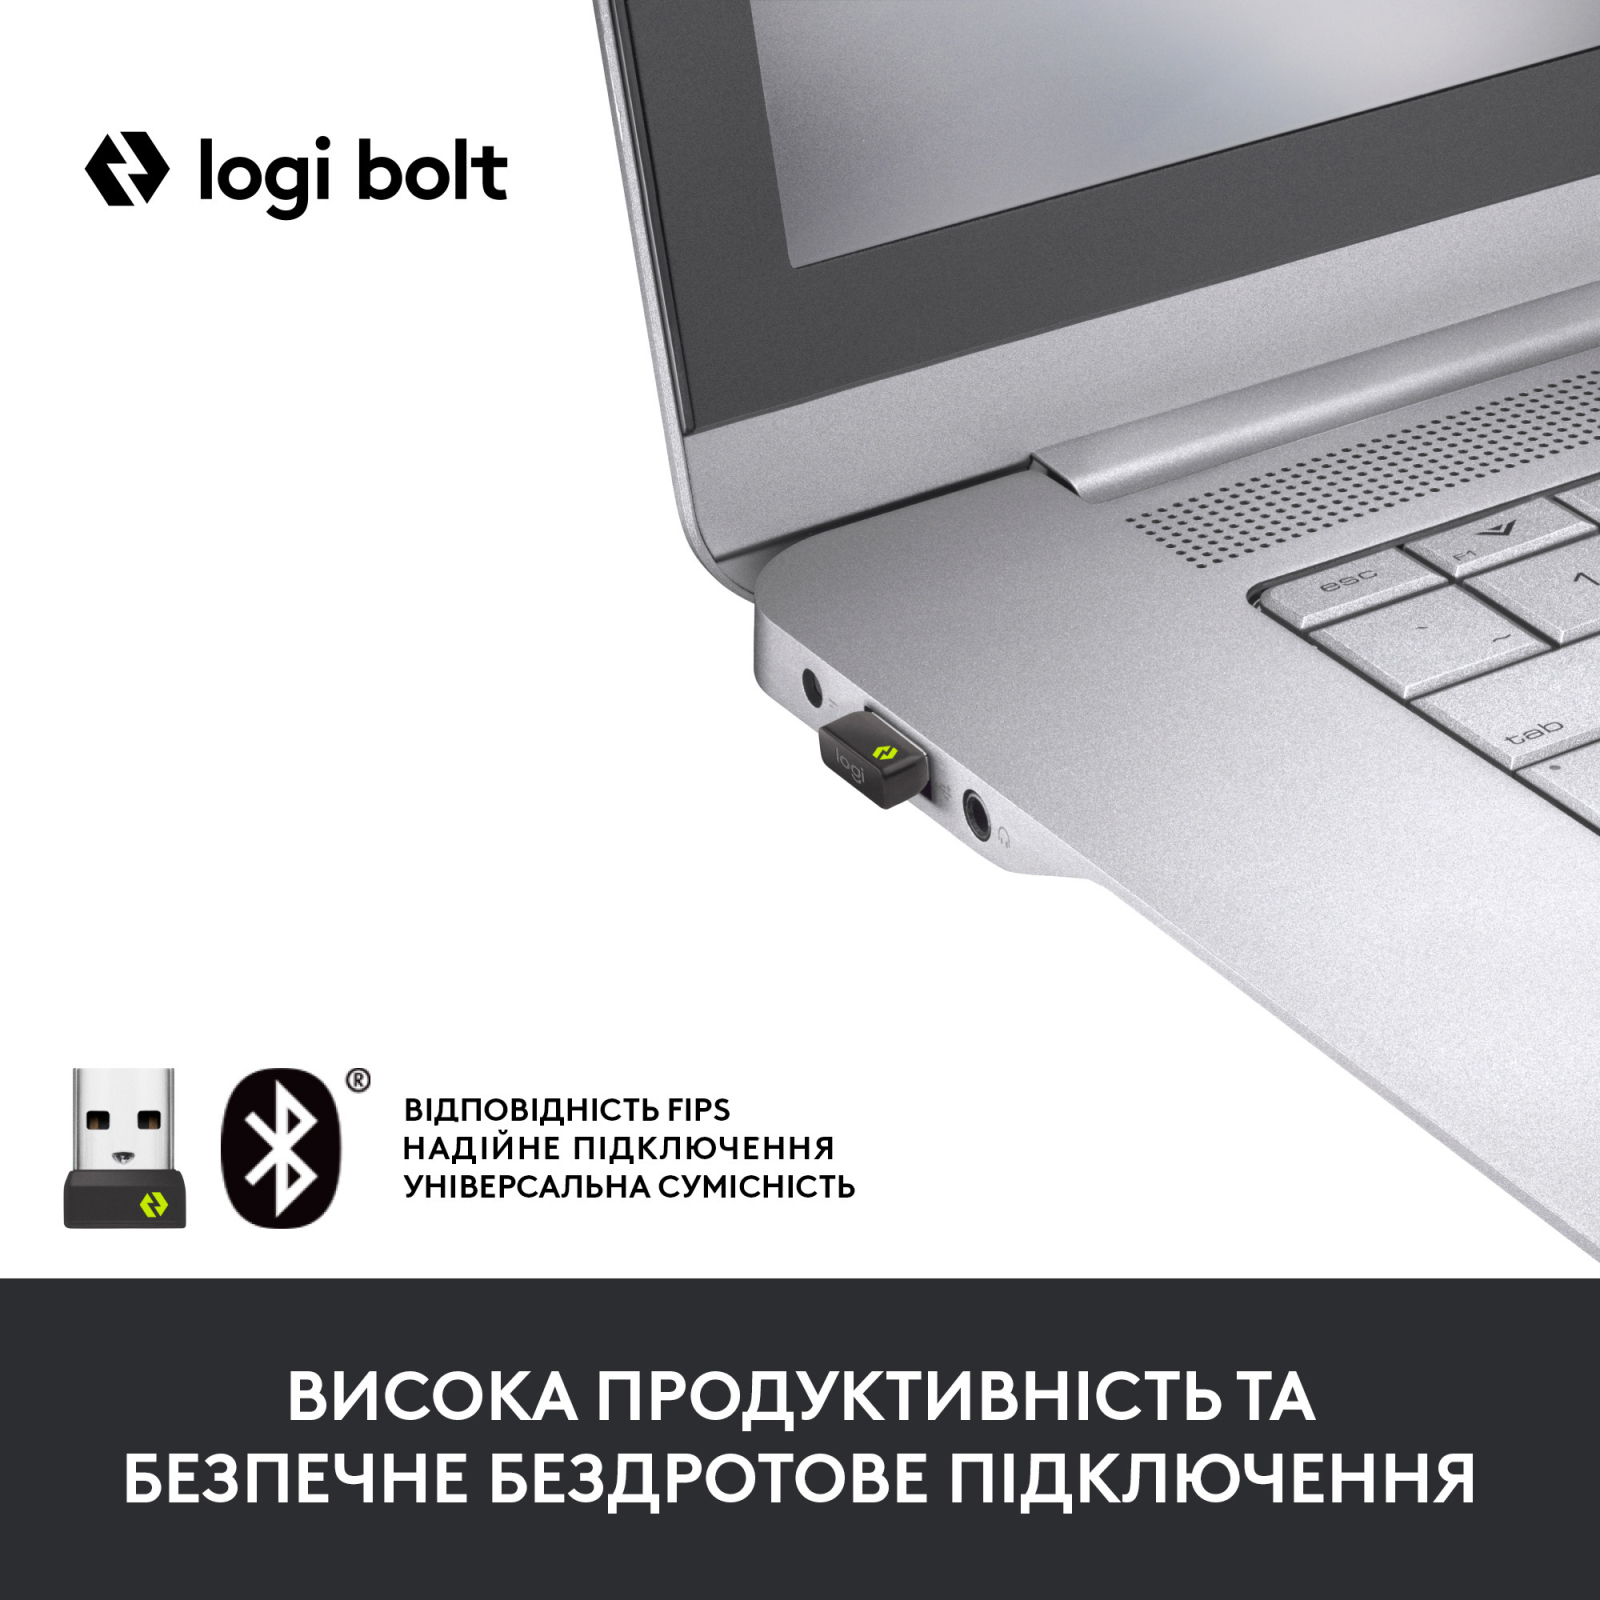 Мышка Logitech Signature M650 Wireless for Business Off-White (910-006275) изображение 2